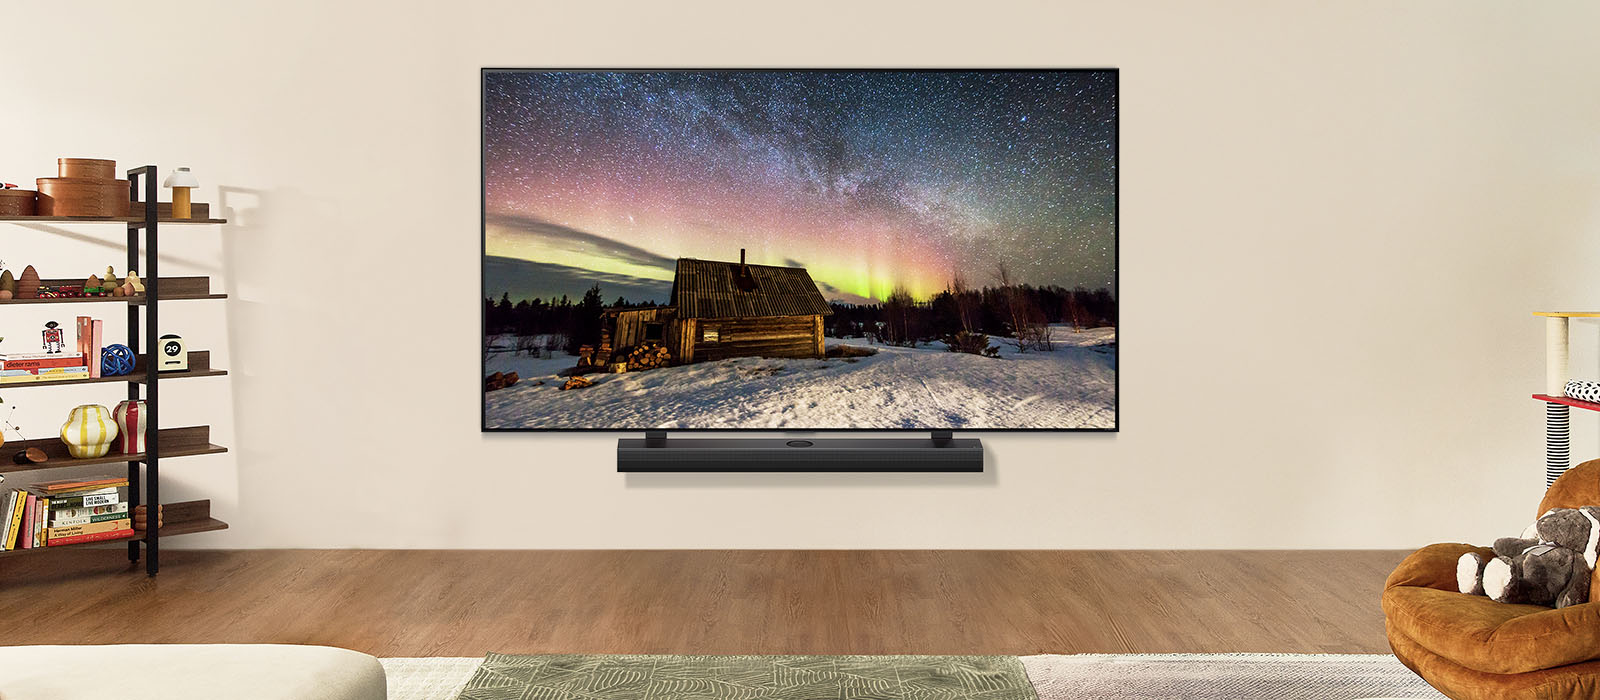 Slika na LG TV-u i LG Soundbar u modernom stambenom prostoru danju. Slika polarne svjetlosti na zaslonu prikazuje se s idealnom razinom svjetline.